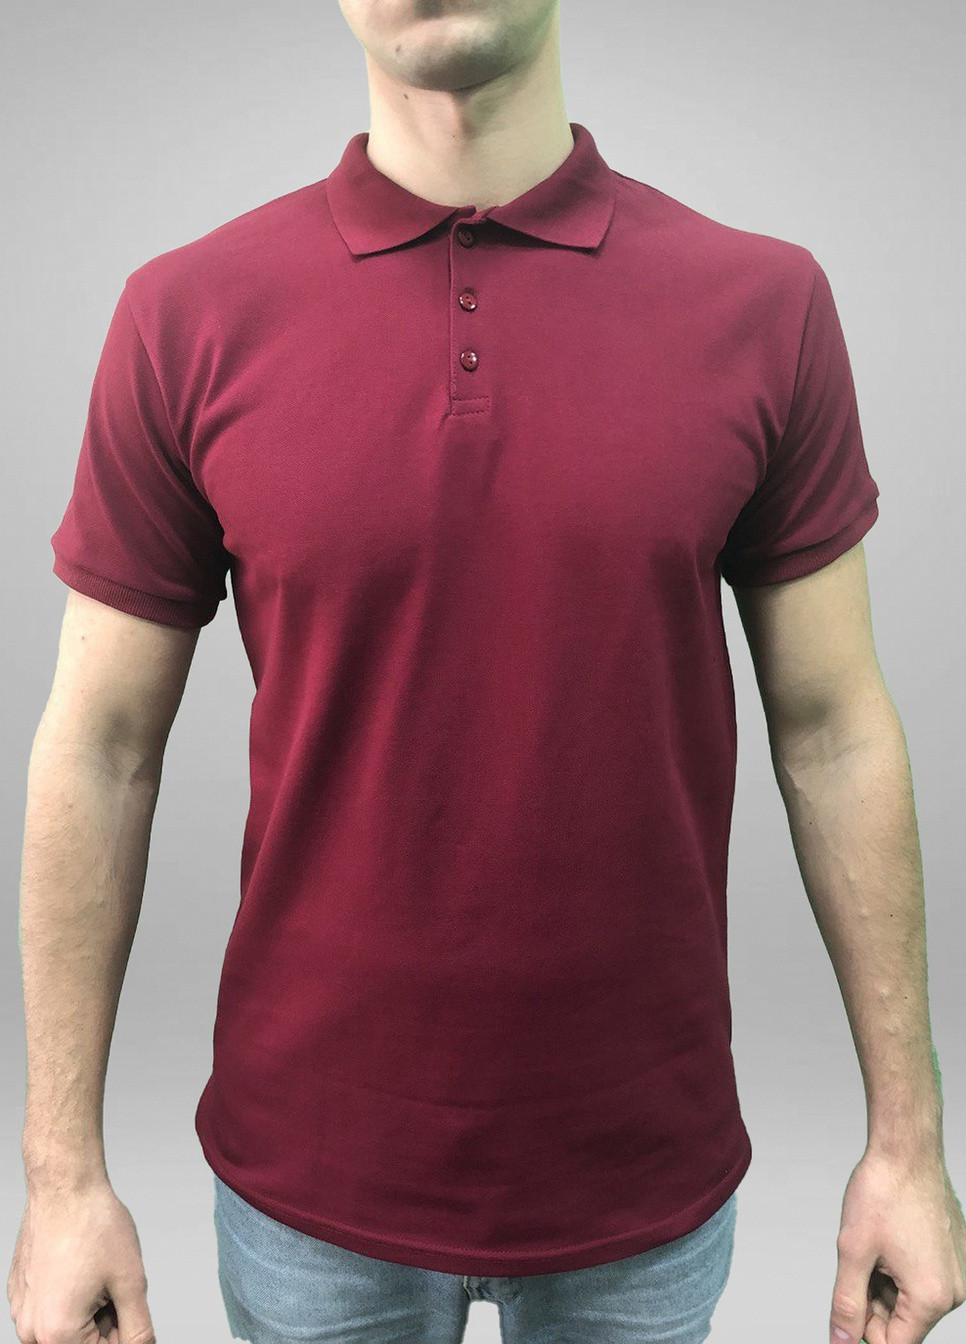 Бордовая футболка-футболка-поло m495/1-43 серая для мужчин Malta однотонная